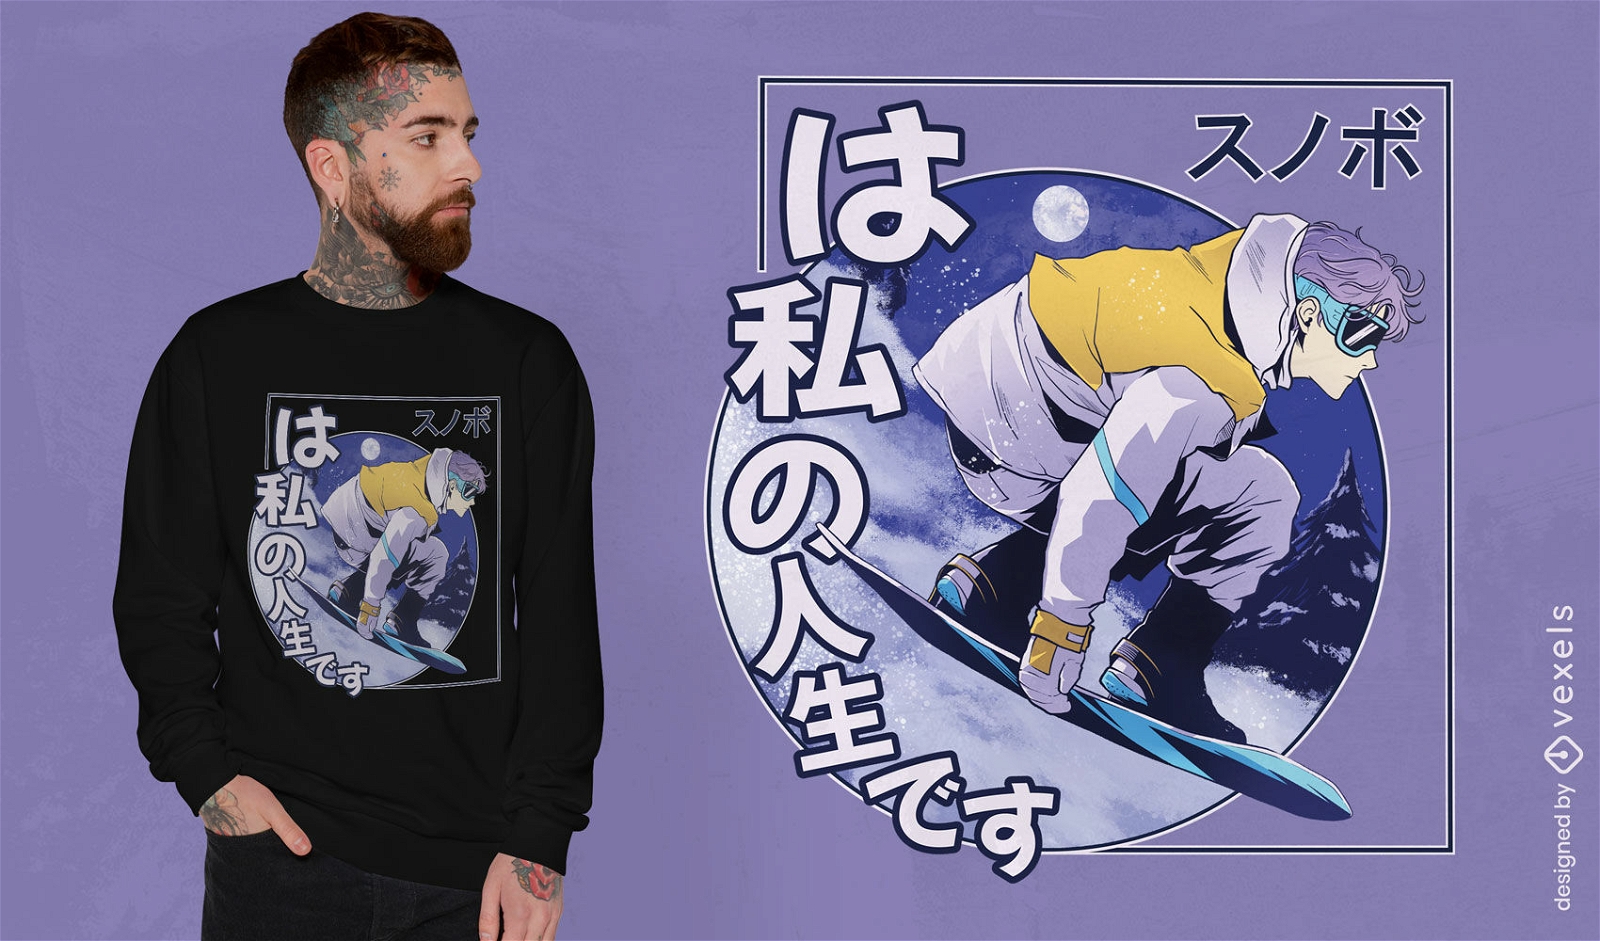 Dise?o de camiseta de snowboard de anime.